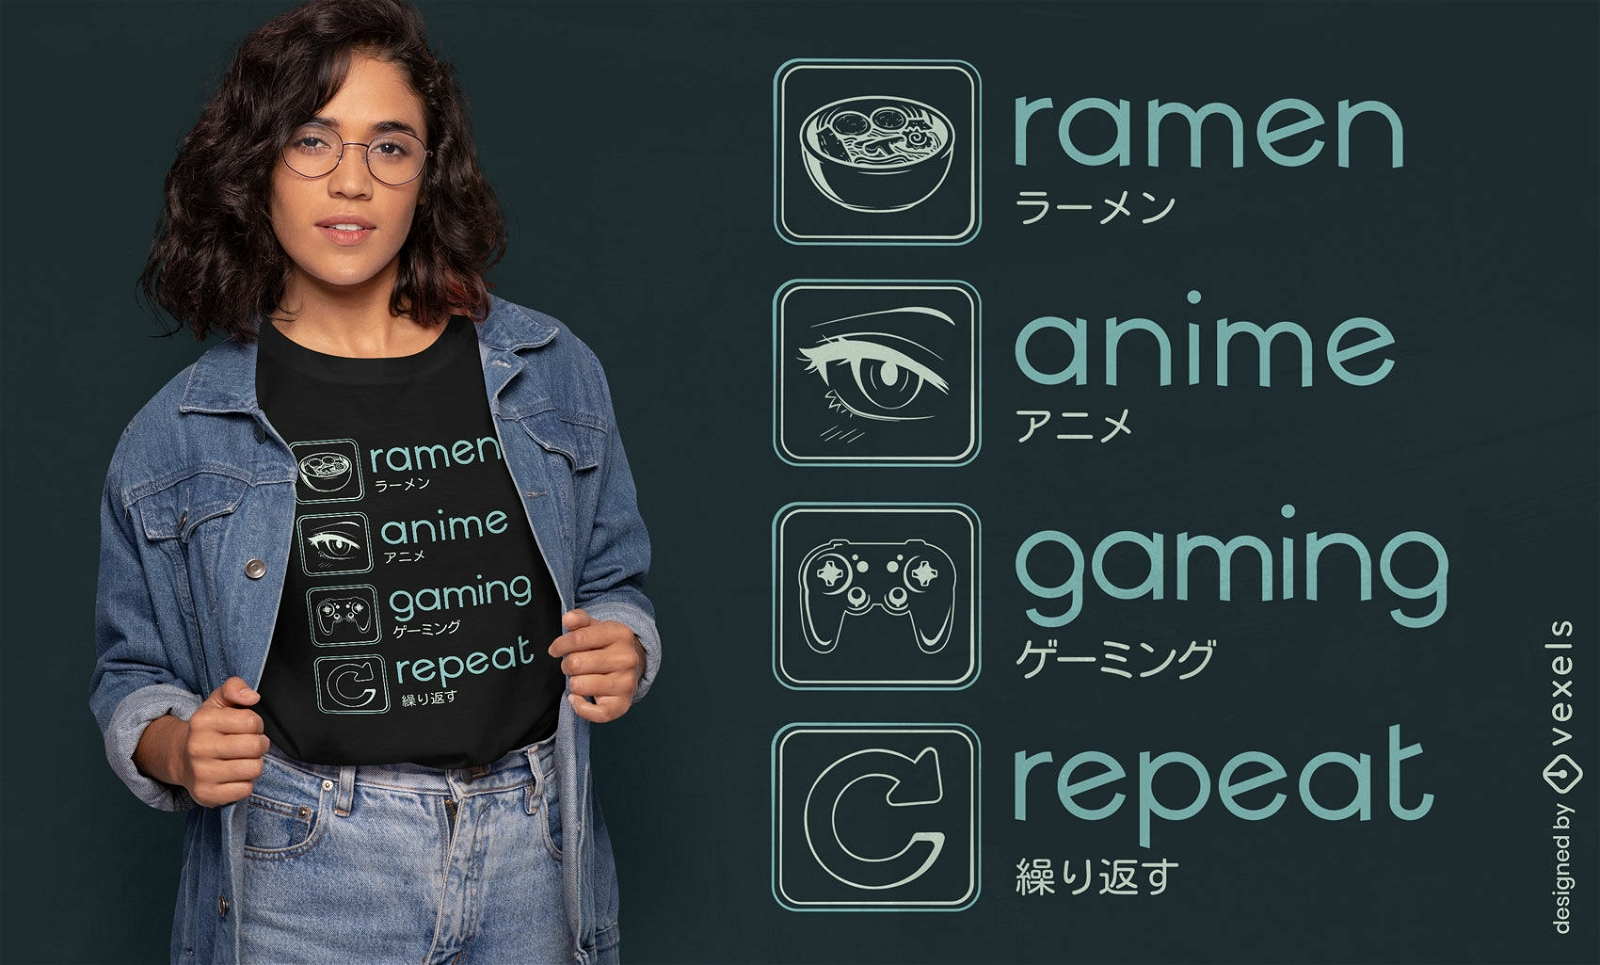 Diseño de camiseta de rutina de anime y juegos.